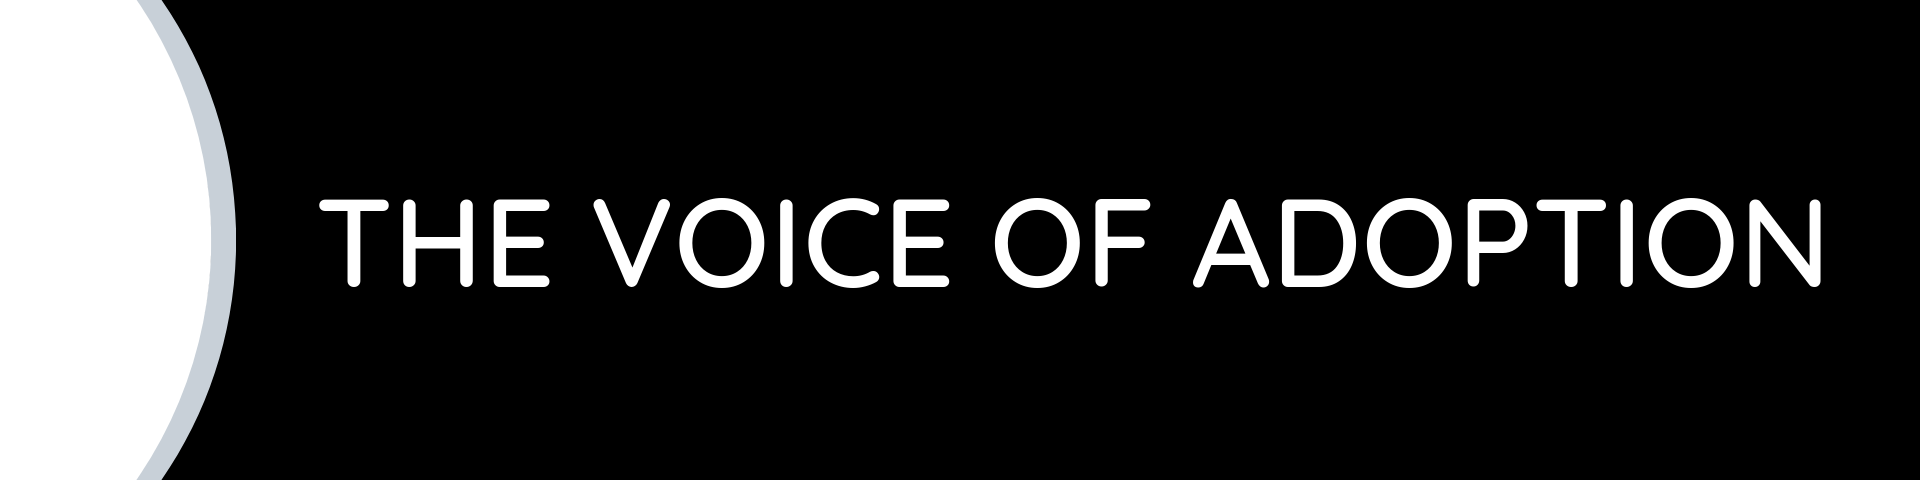 The Voice of Adoption logo